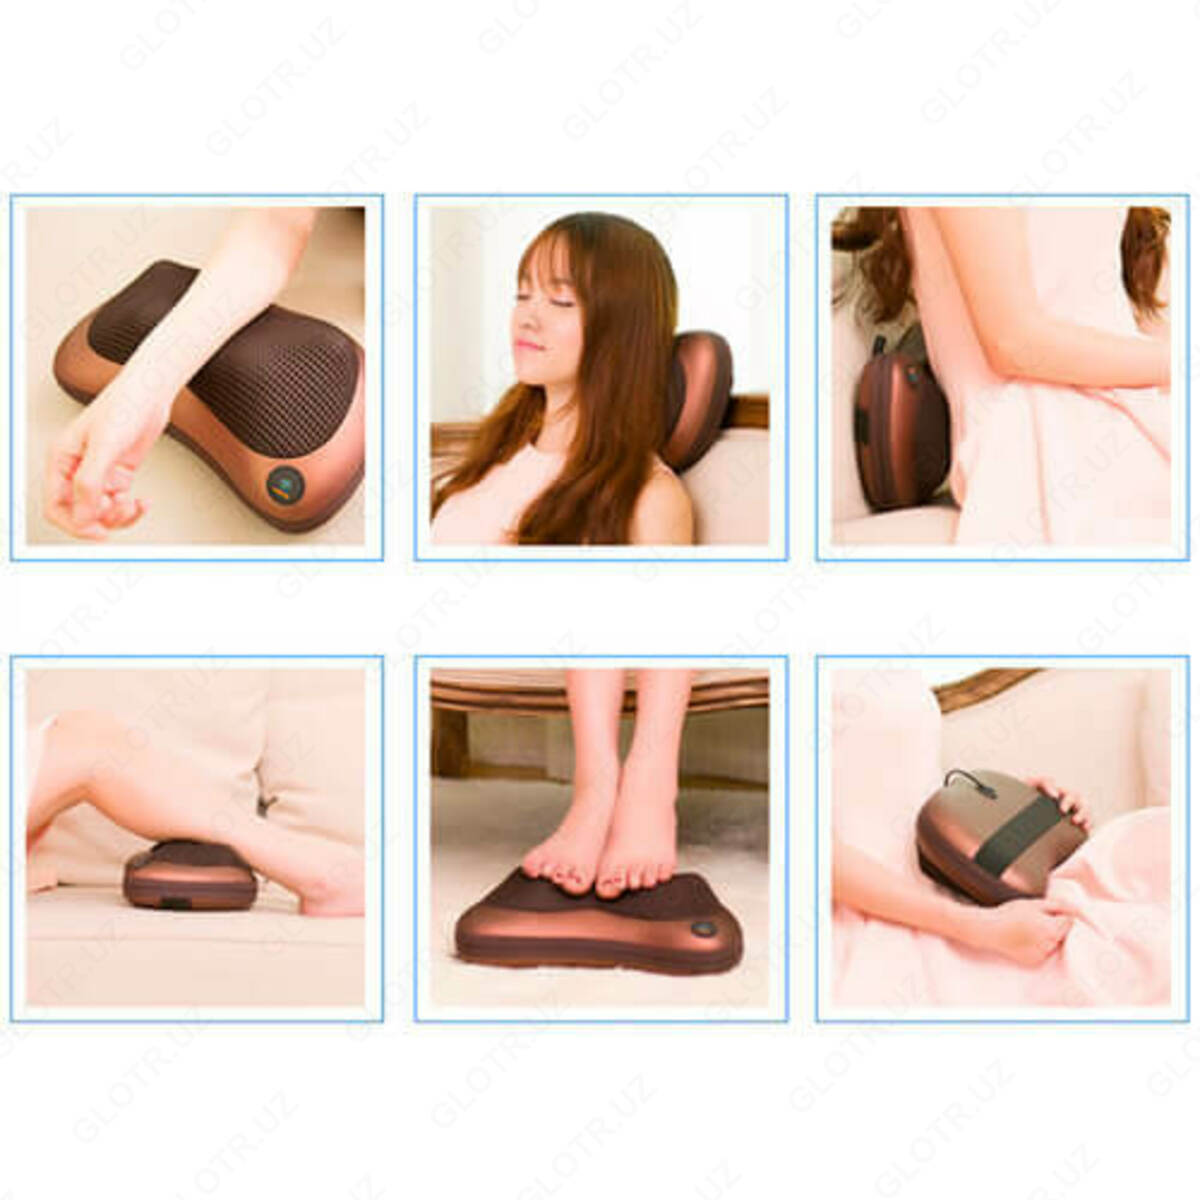 Massage Pillow Fp 8028